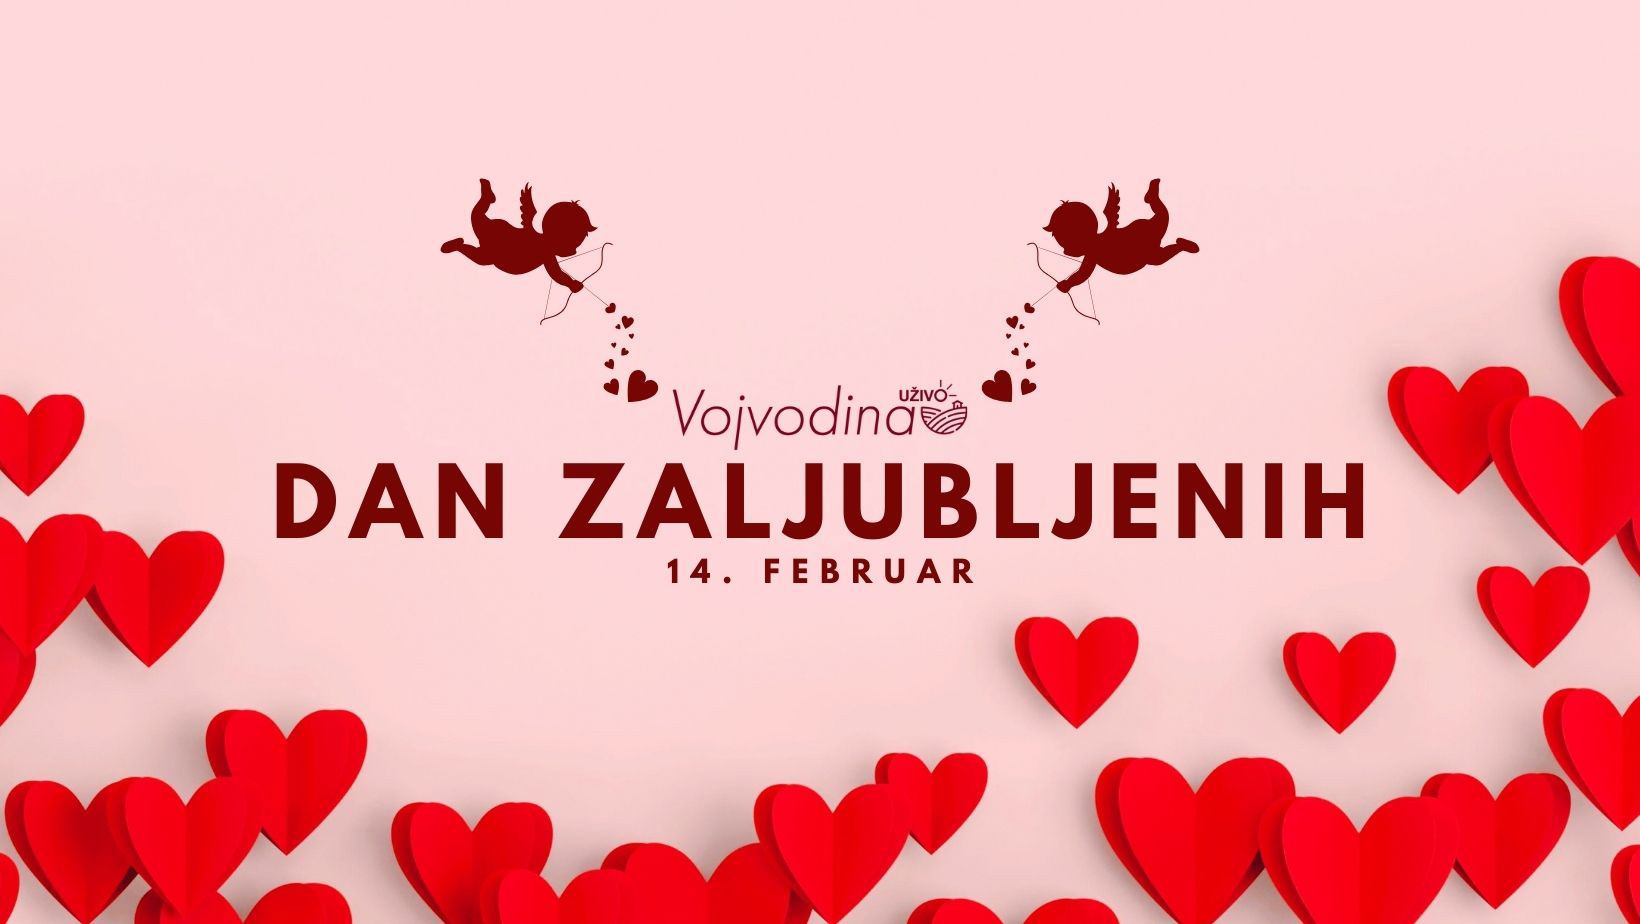 Dan zaljubljenih, izvor Vojvodina uzivo